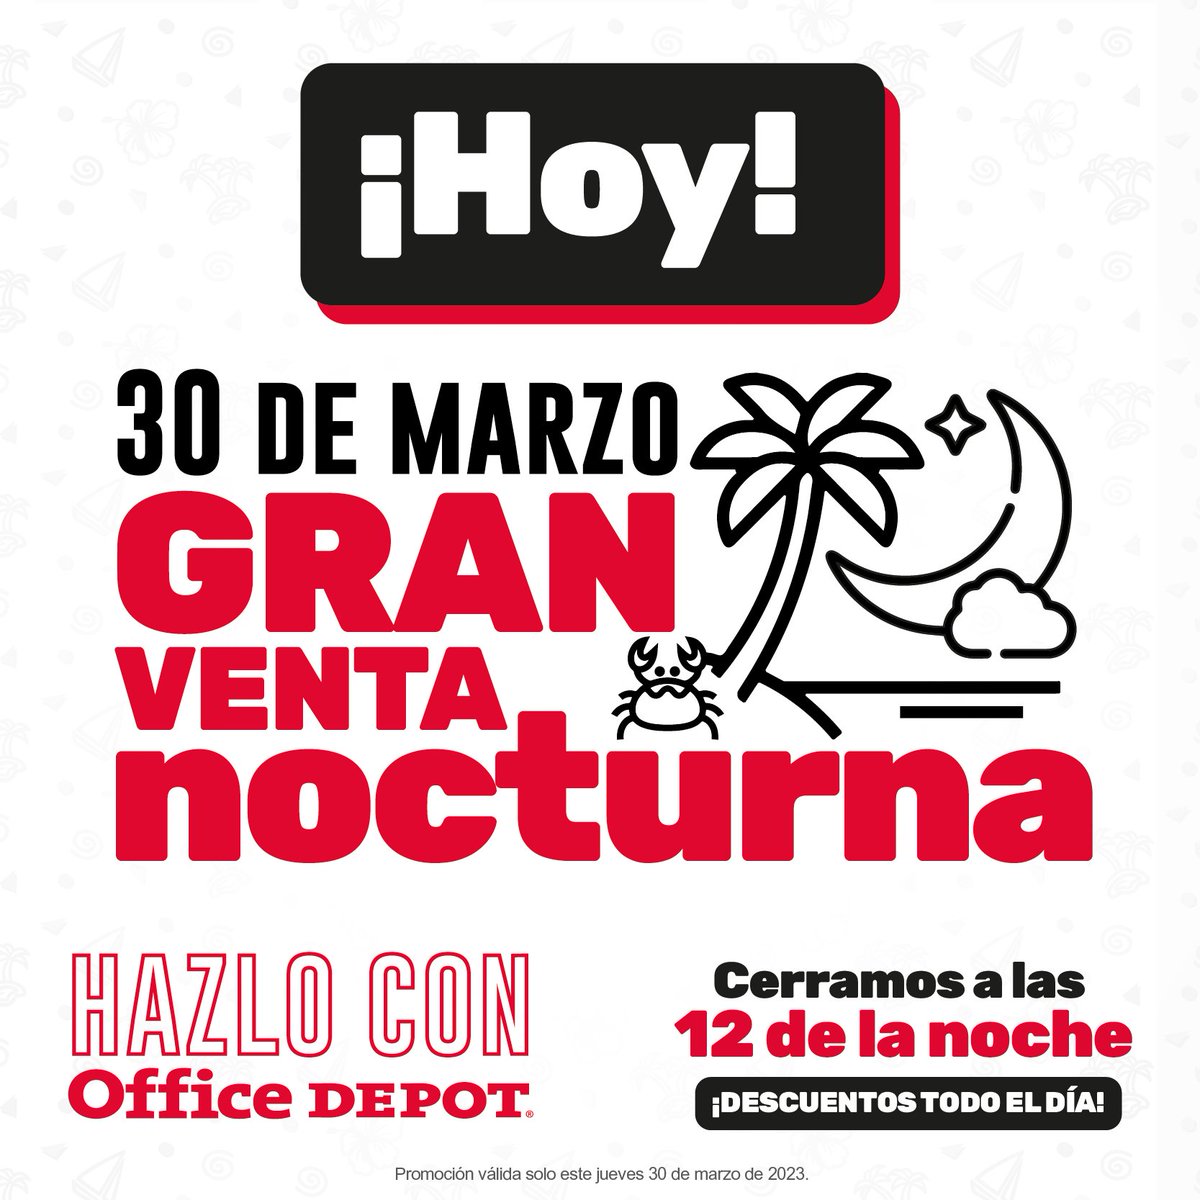 Office Depot El Salvador (@OfficeDepotSV) / Twitter